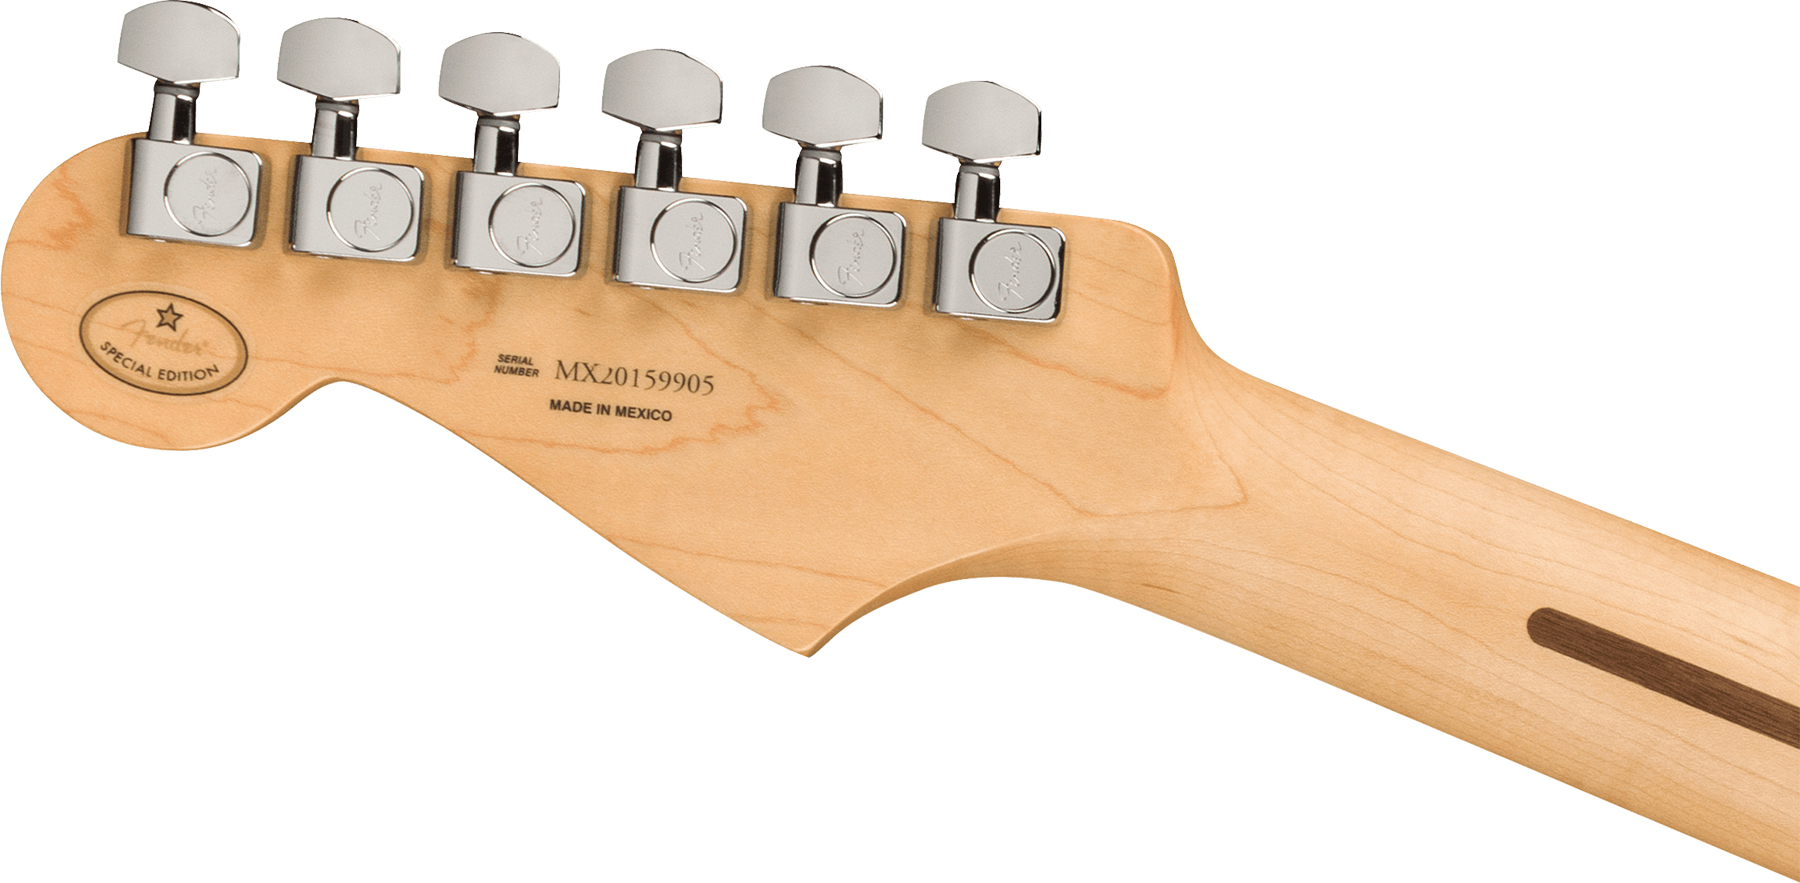 Fender Strat Player Ltd Mex 3s Trem Mn - Pacific Peach - Guitare Électrique Forme Str - Variation 3